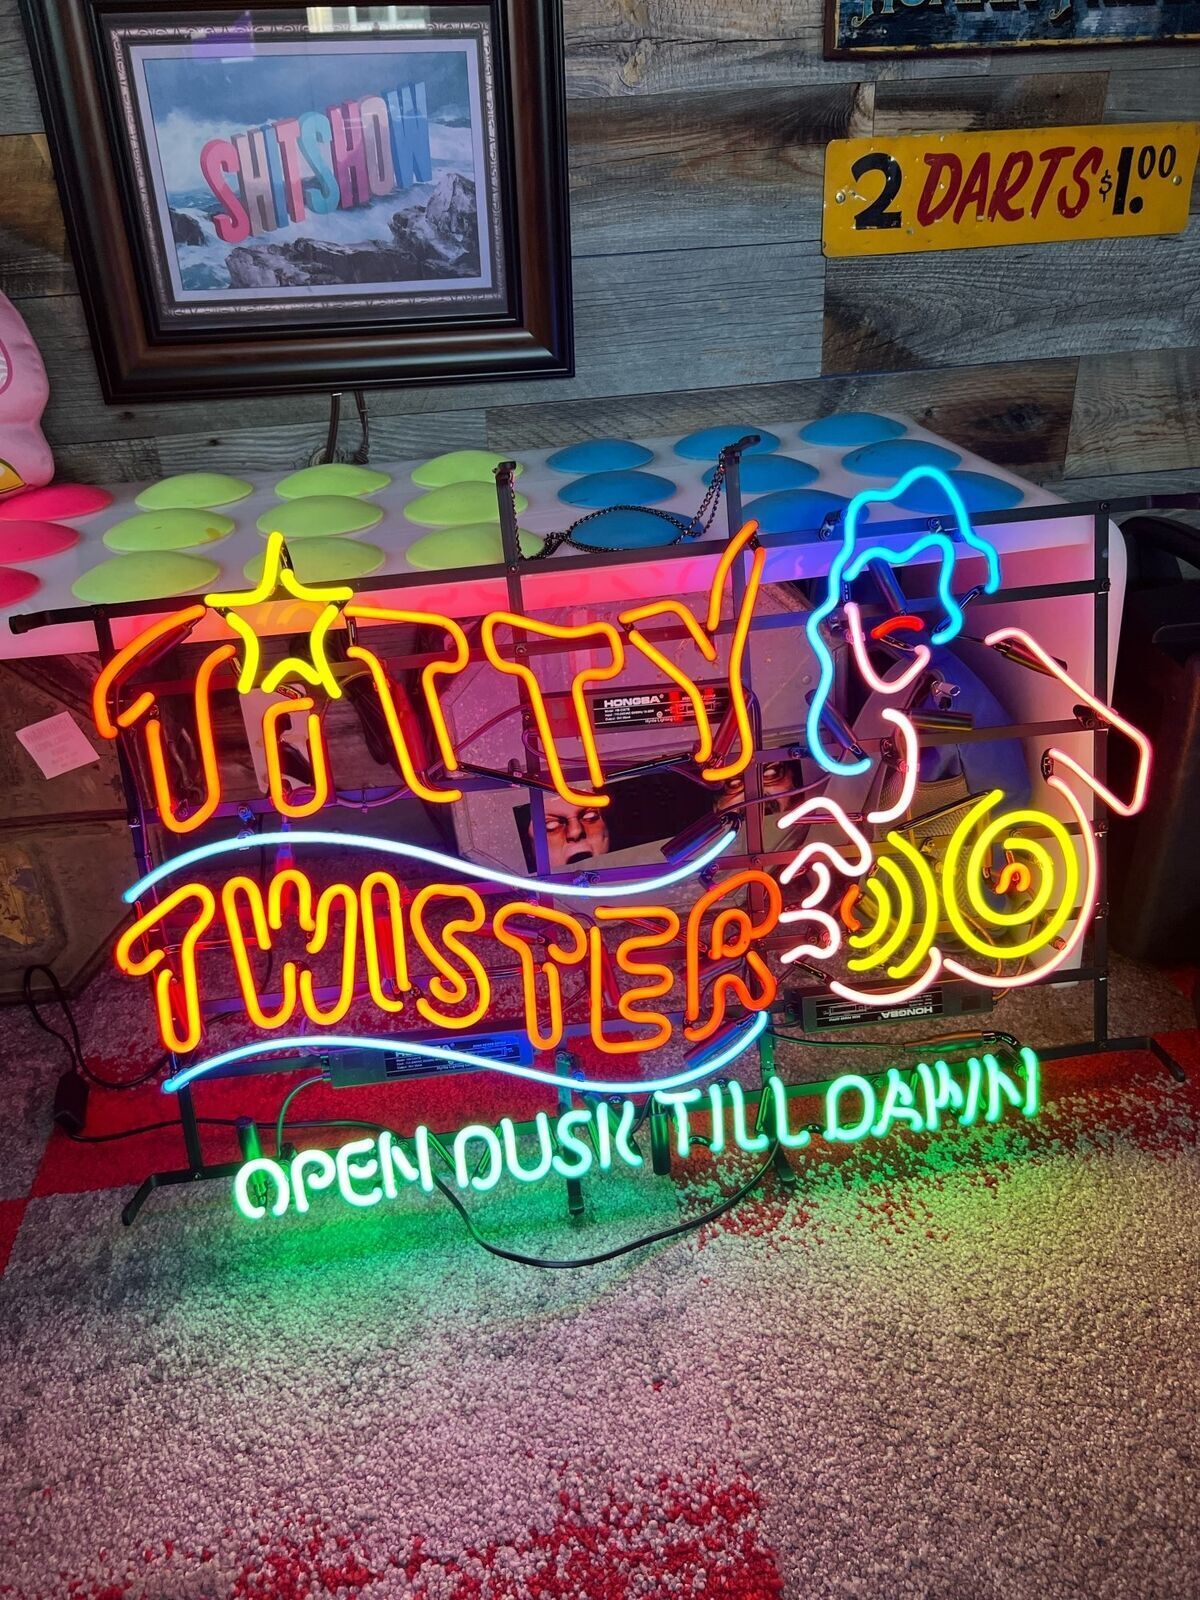 Titty Twister Open Dusk Till Dawn 24x20 Neon Light Sign Lamp Wall Decor Glass